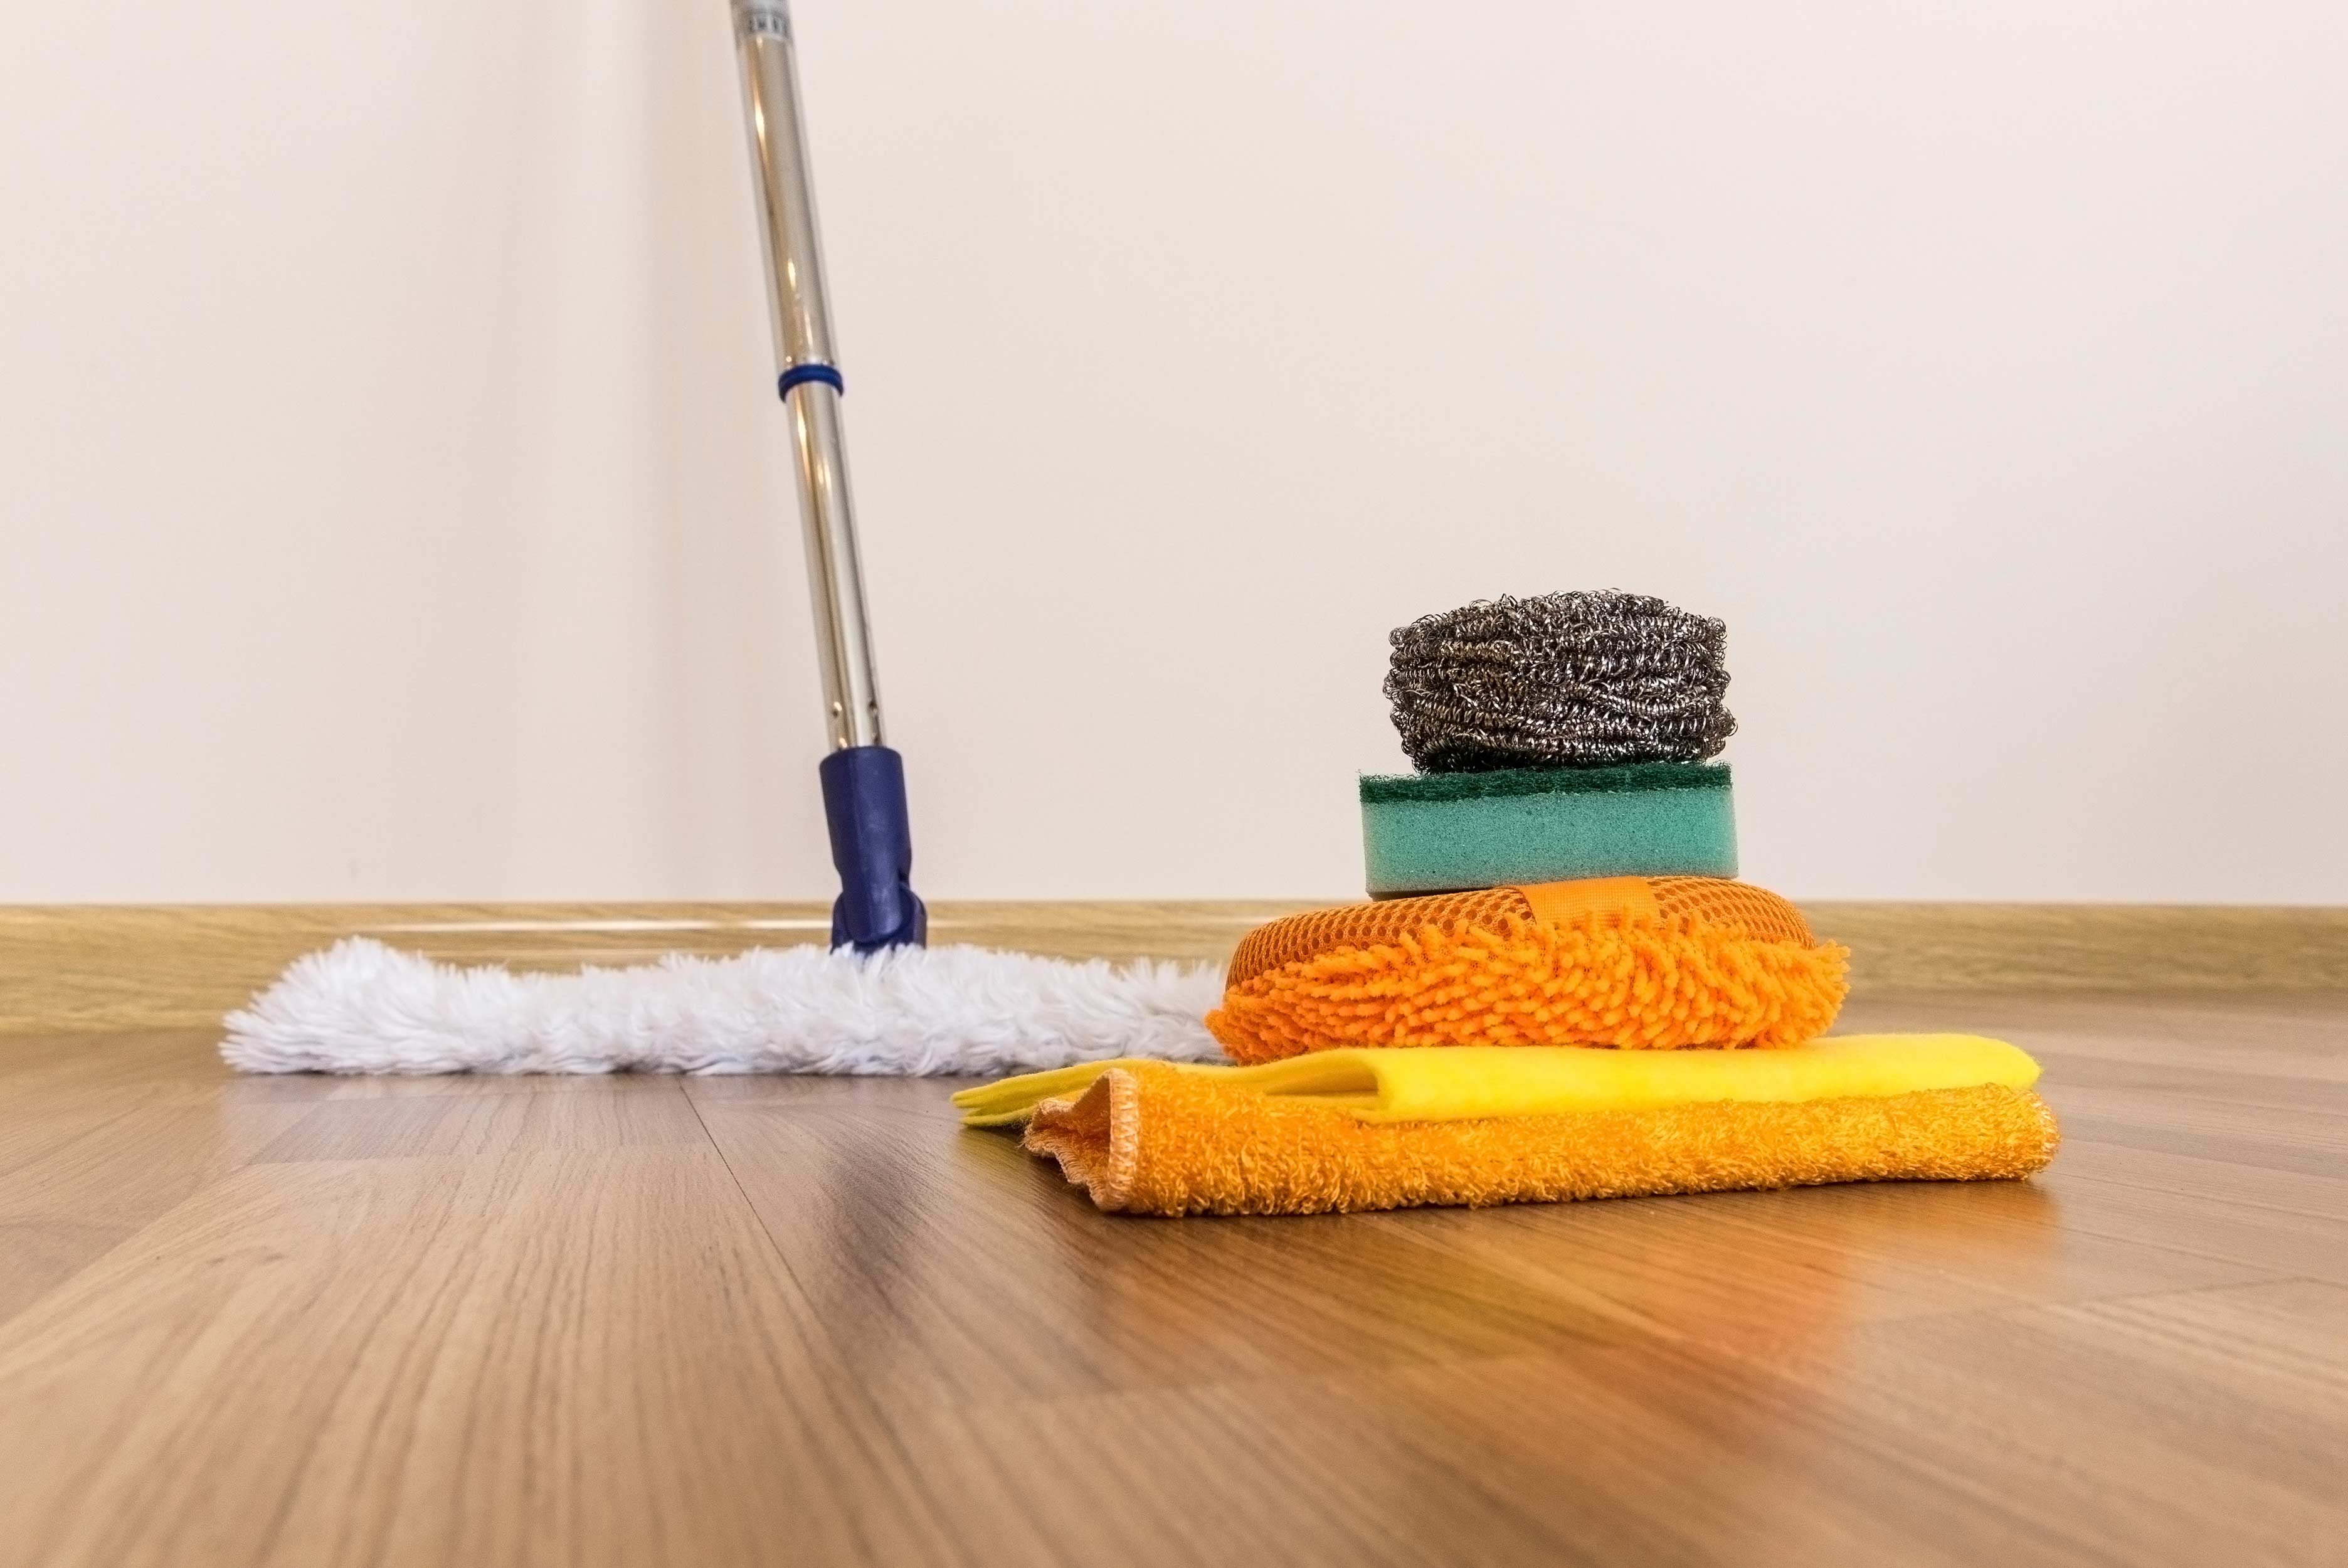 Cleaning Engineered Hardwood Floors Tips In Easiest Way Roy Home Design